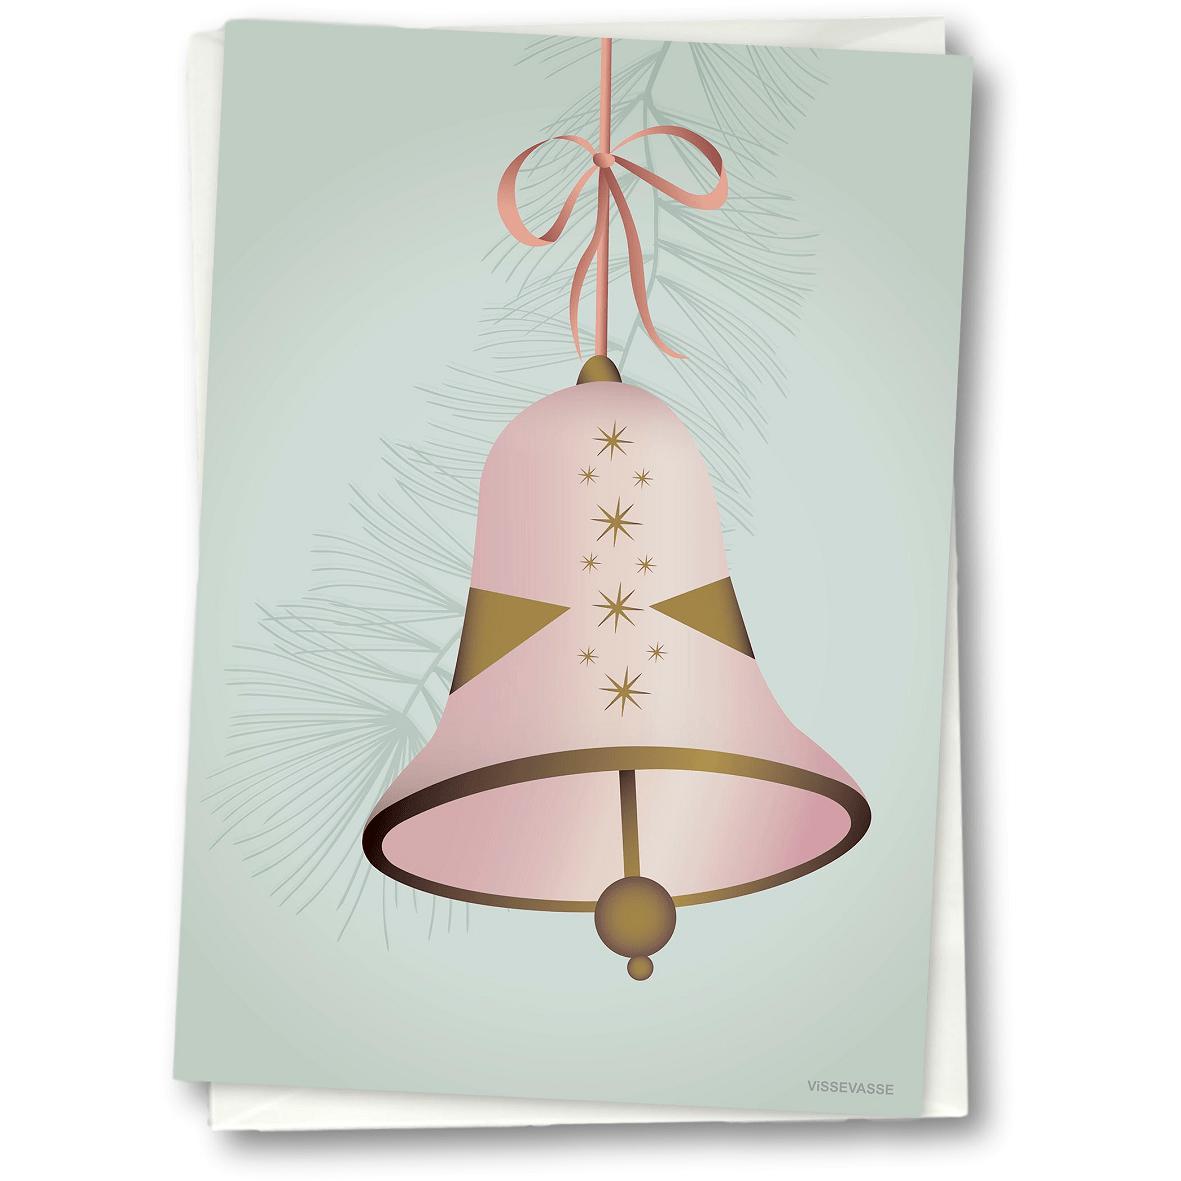 Vissevasse Weihnachtsglocke Grußkarte 15 X21 Cm, Rosa